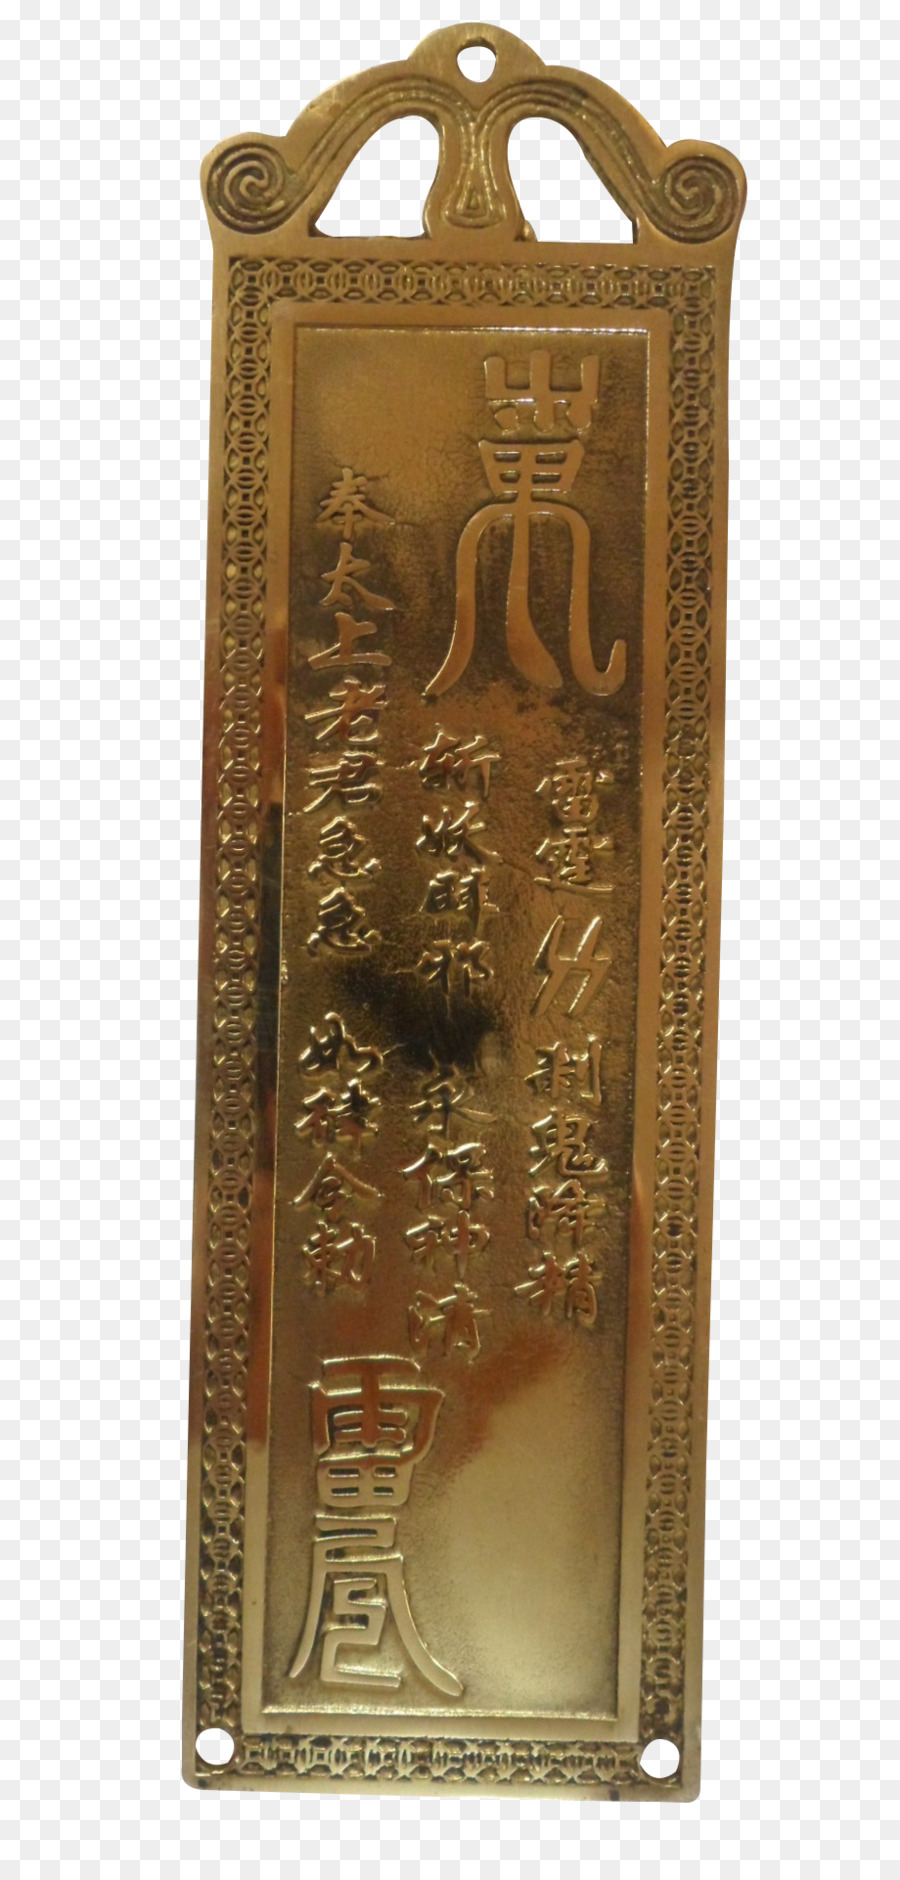 Elements Hong Kong Brass